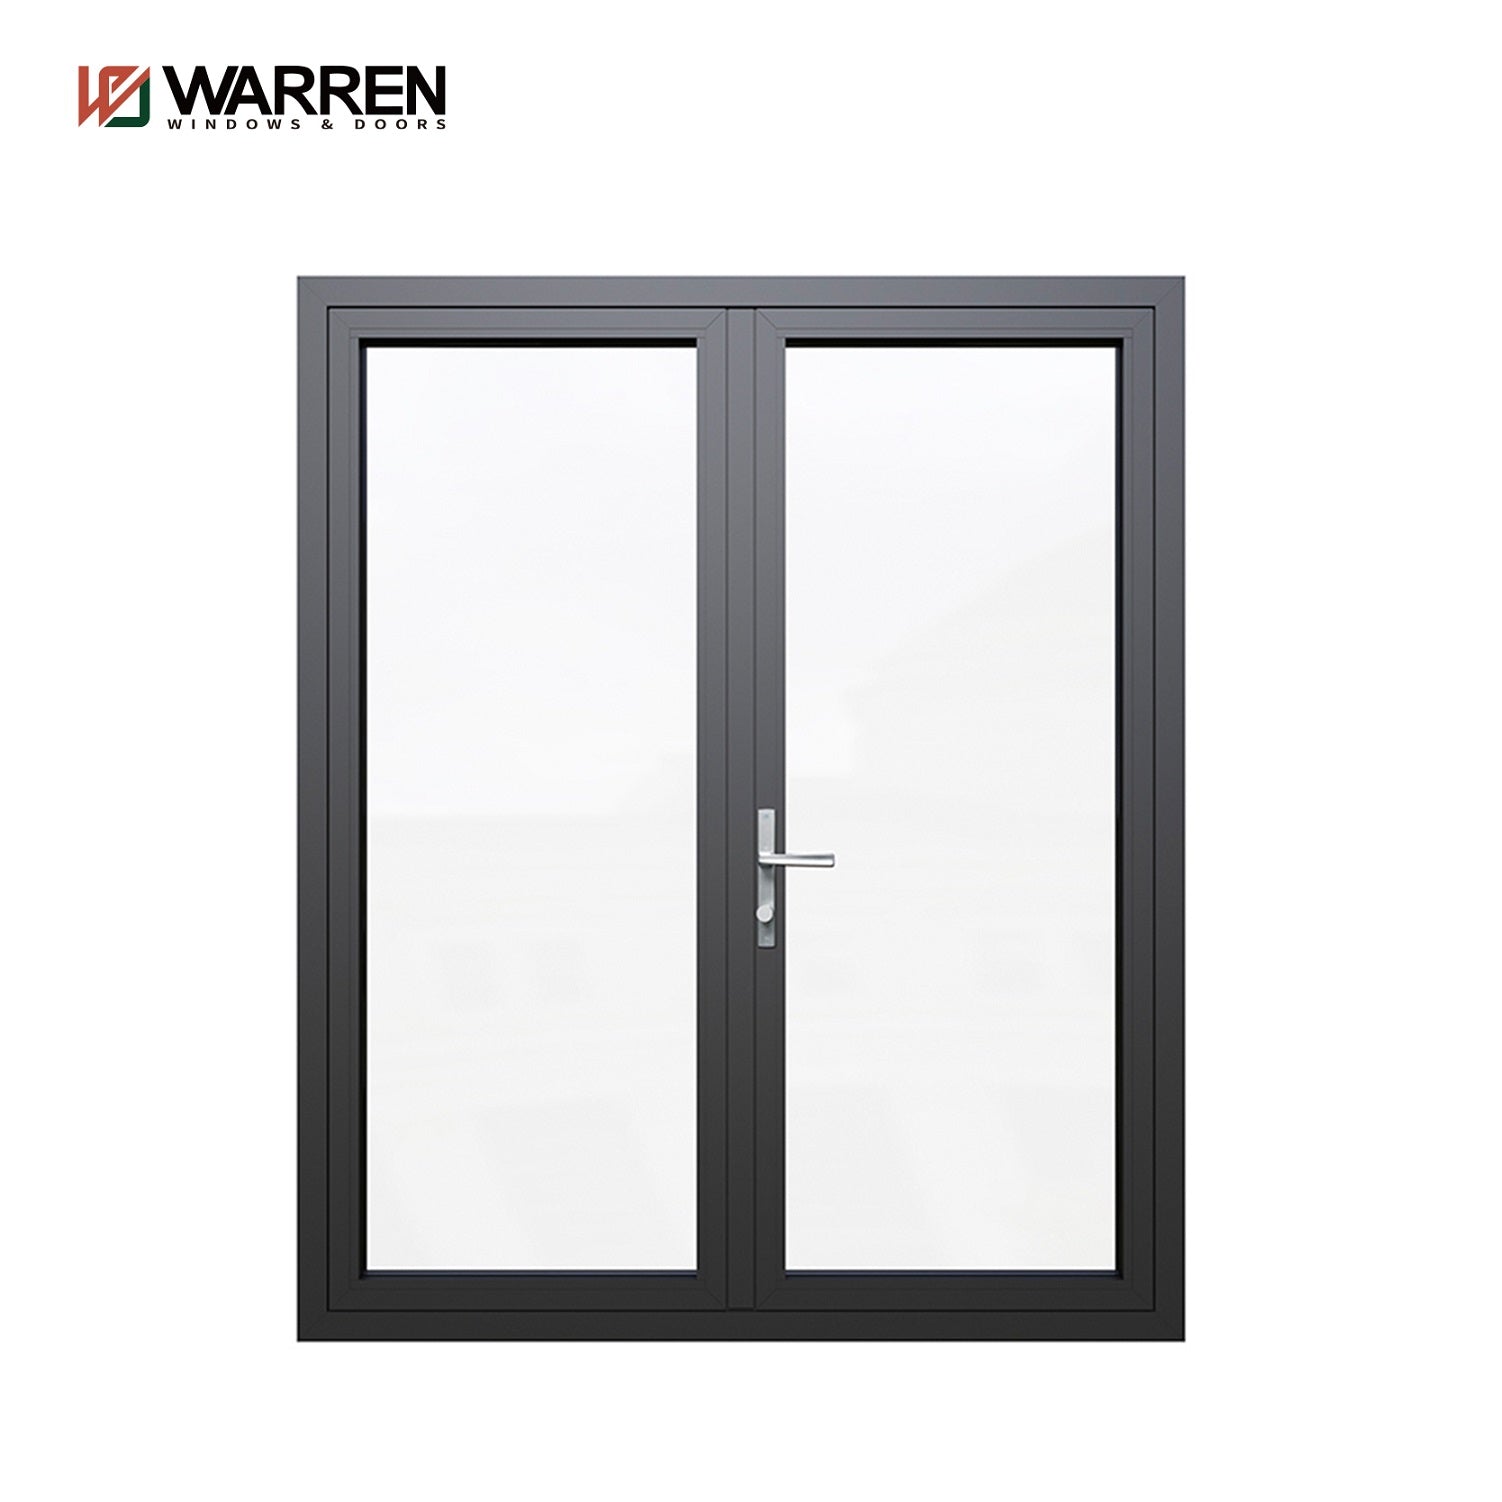 Warren Hinged Door Hurricane Proof Windows And Doors  Aluminium Casement Doors For Kitchen Bathroom